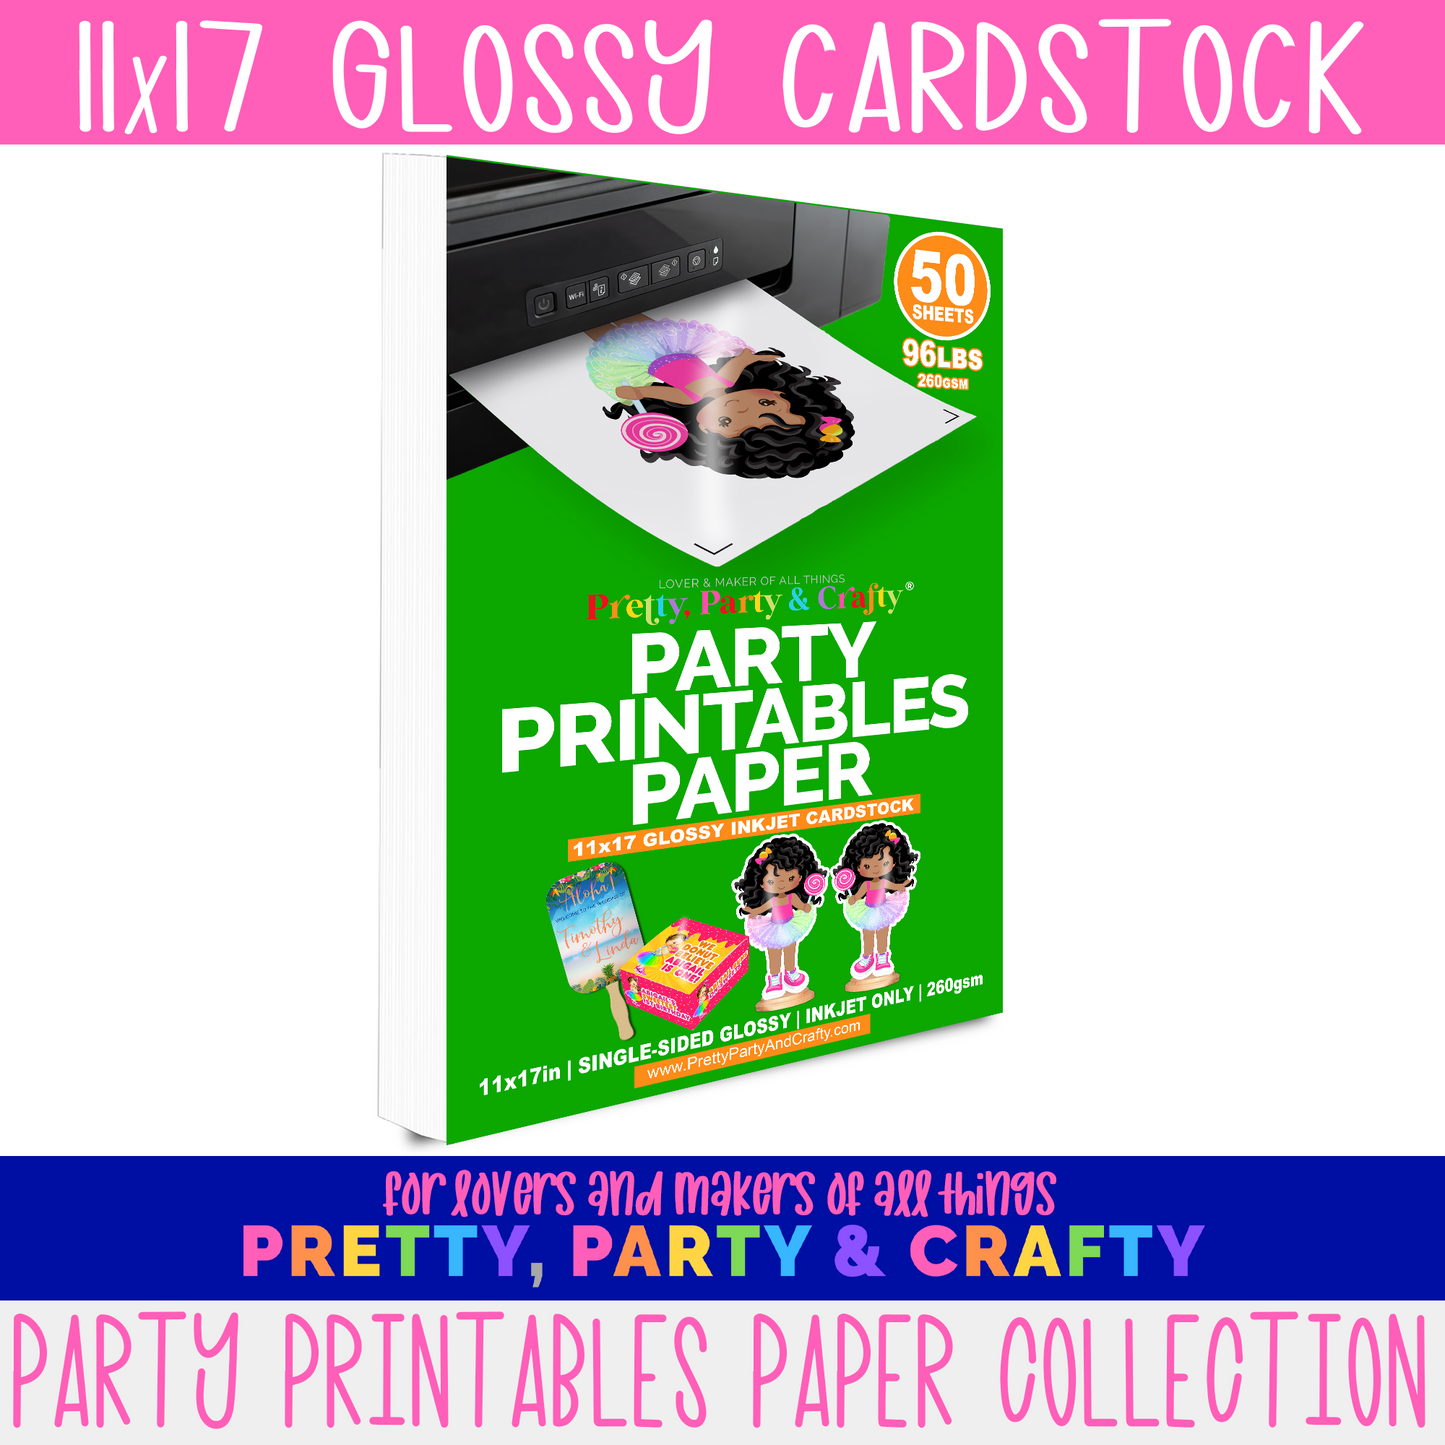 Modern Vertical Textured Paper Business Card – Print Peppermint